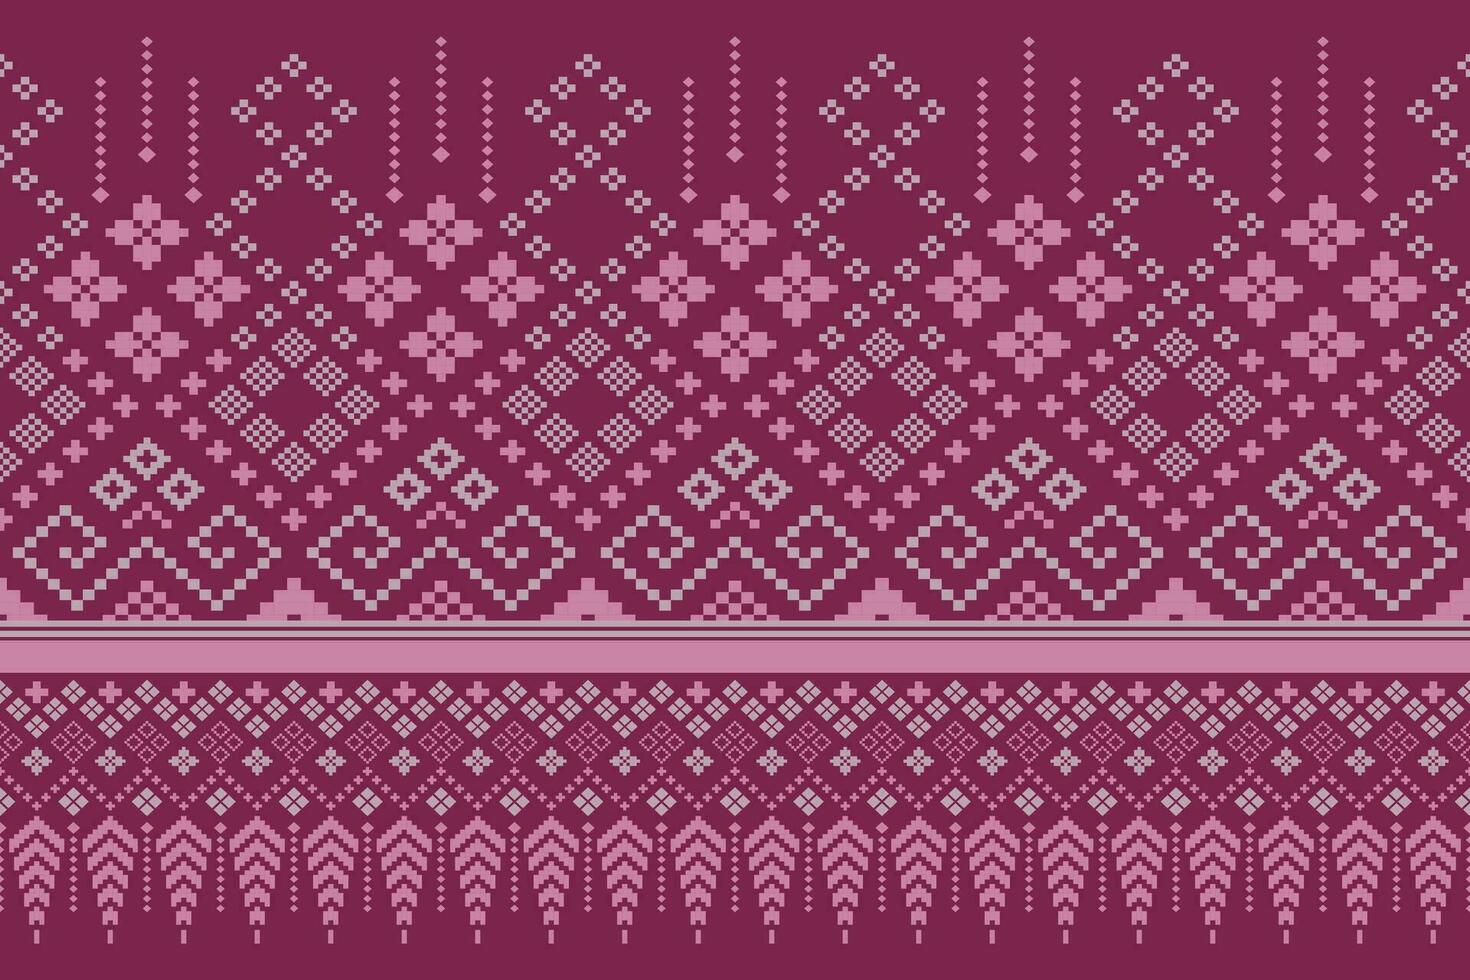 rosa attraversare punto colorato geometrico tradizionale etnico modello ikat senza soluzione di continuità modello confine astratto design per tessuto Stampa stoffa vestito tappeto le tende e sarong azteco africano indiano indonesiano vettore